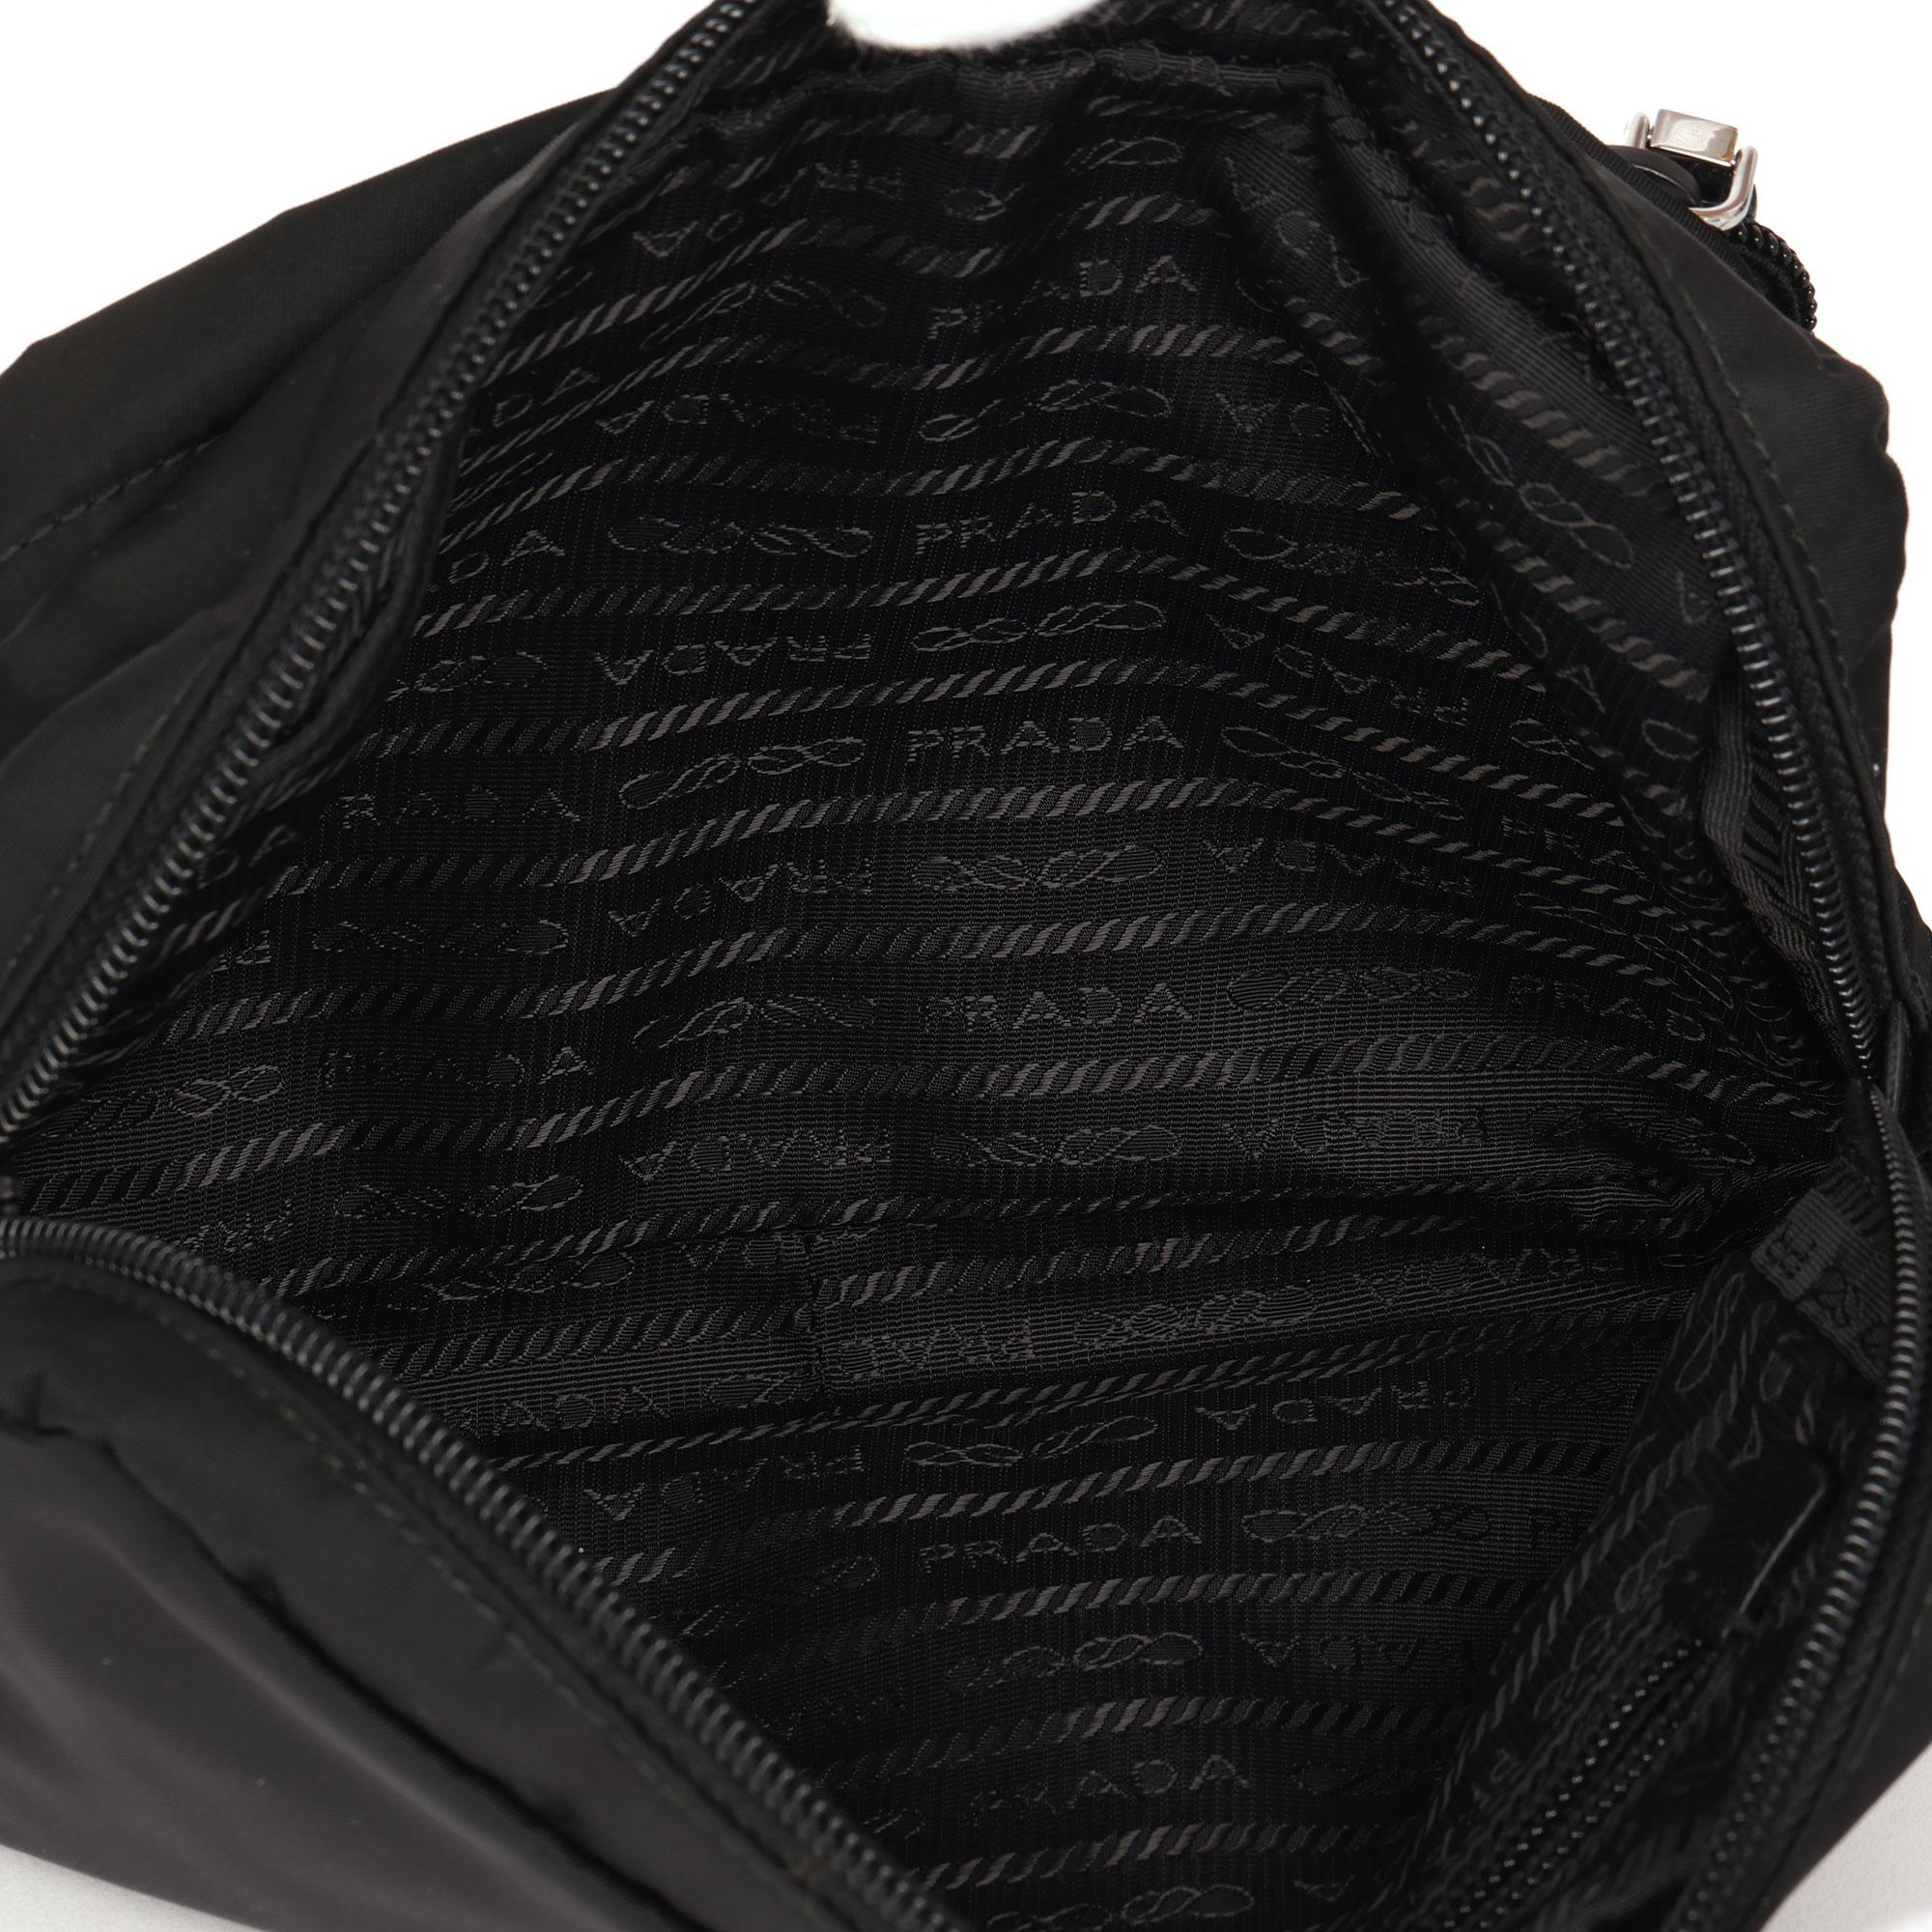 Prada Black Nylon & Saffiano Leather Pouch  2